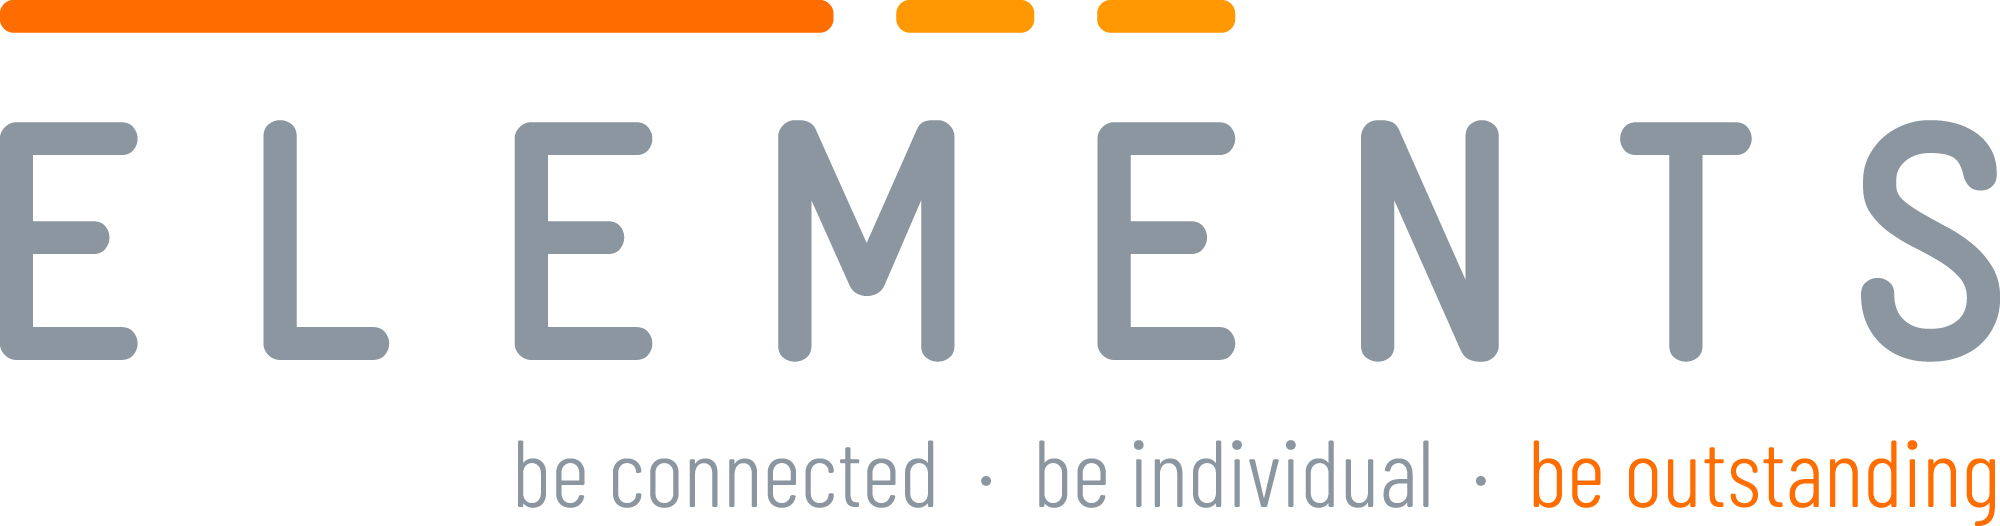 Logo ELEMENTS 2000x